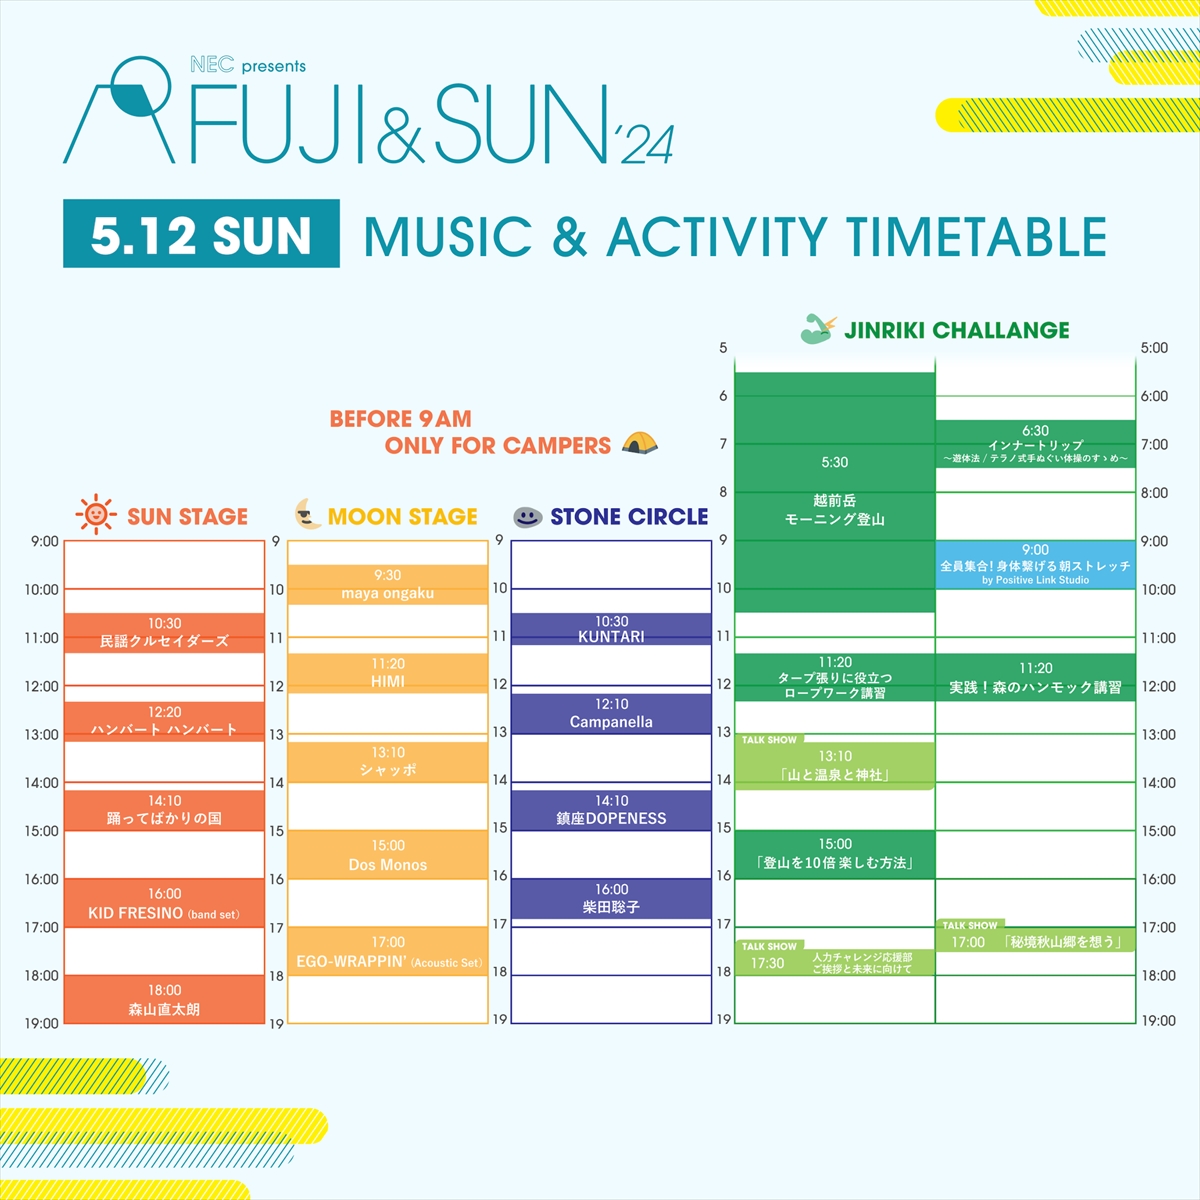 『 FUJI & SUN’24』タイムテーブル